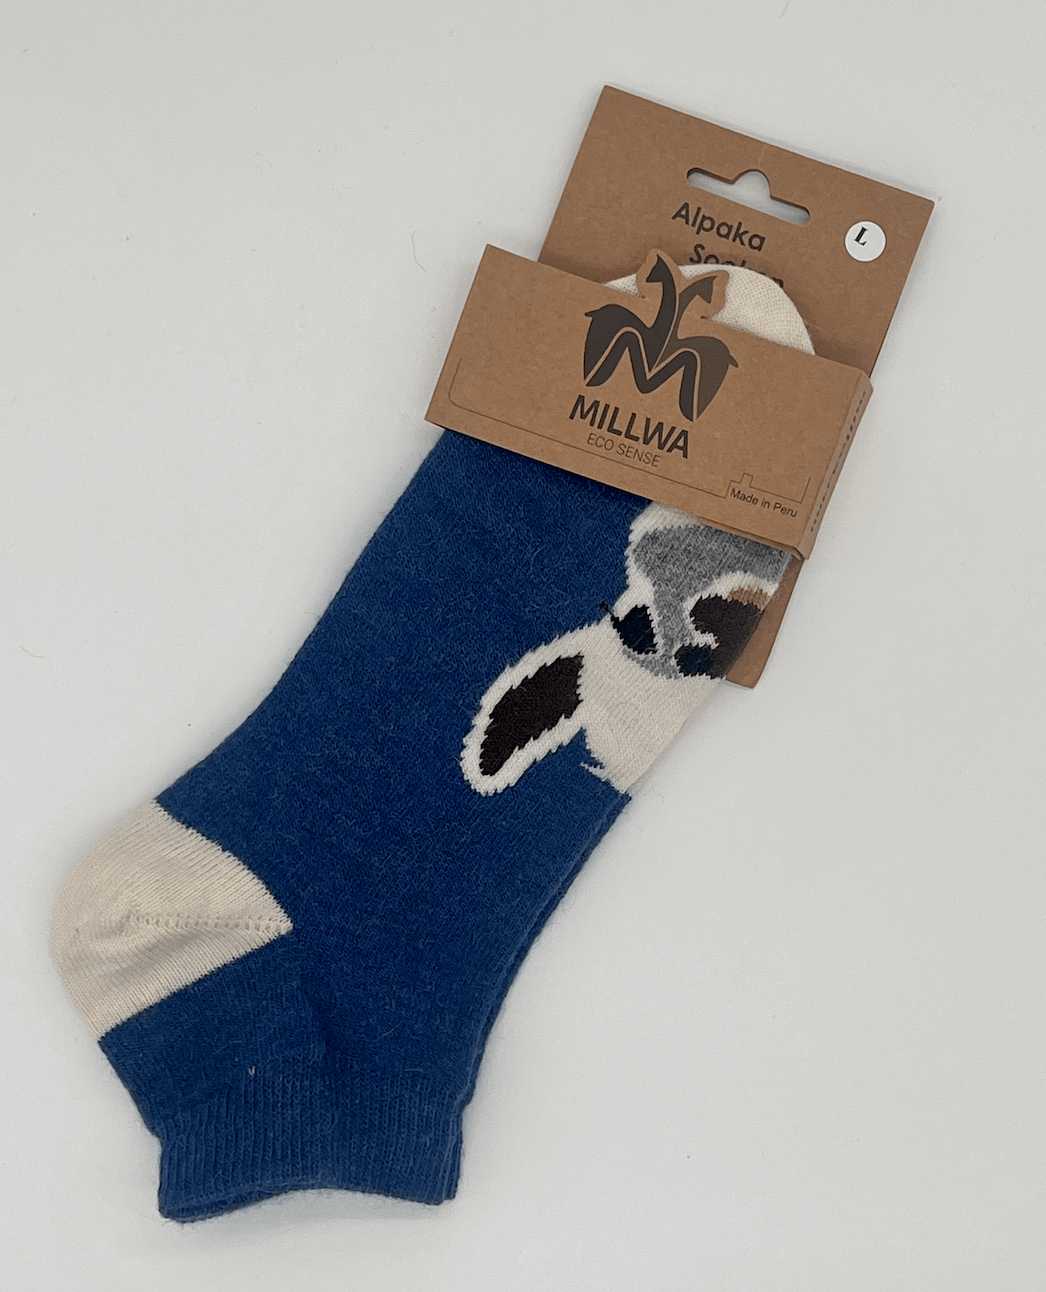 Alpakawoll-Socken im Alpaka-Design – verspieltes Motiv & kuschelig warm!